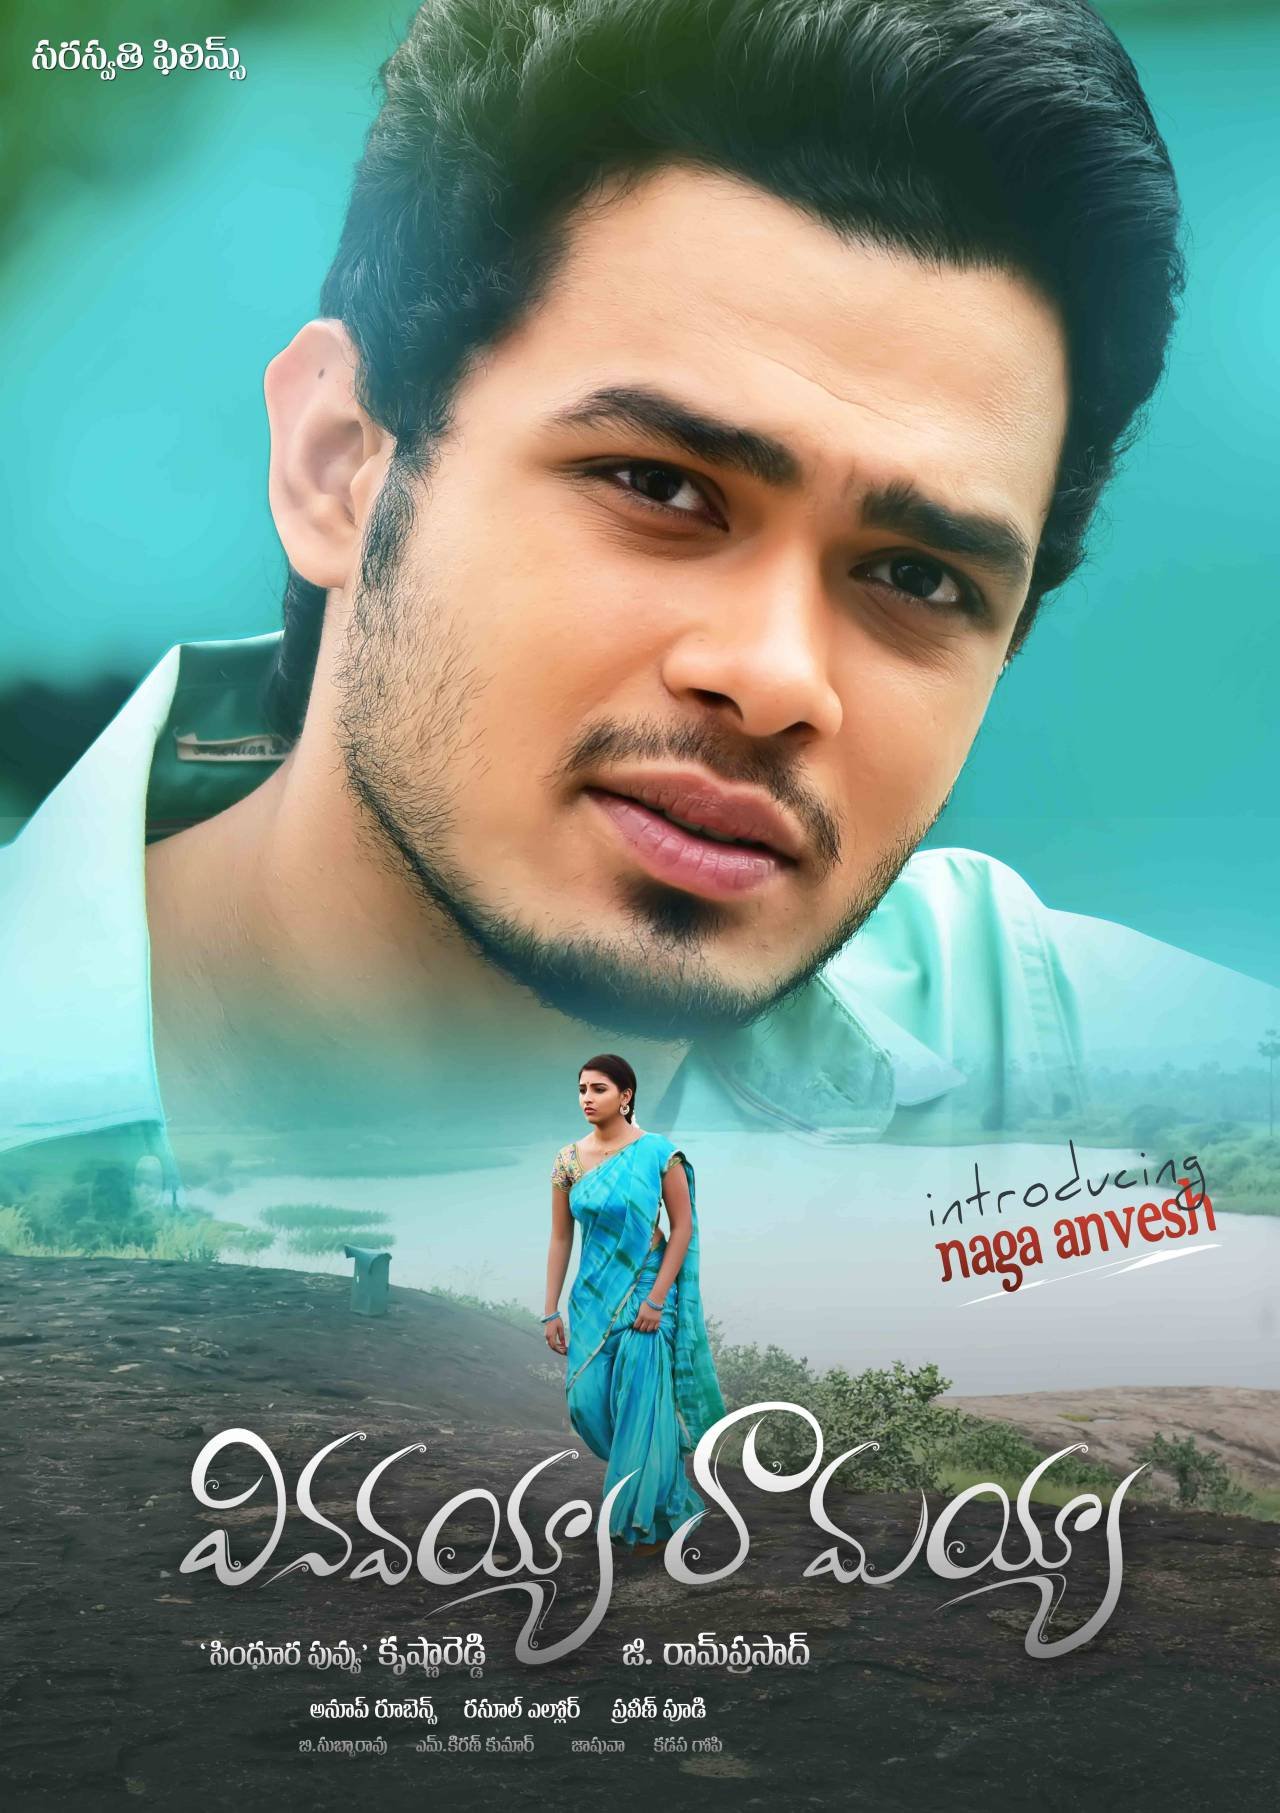 Telugu poster of the movie Vinavayya Ramayya